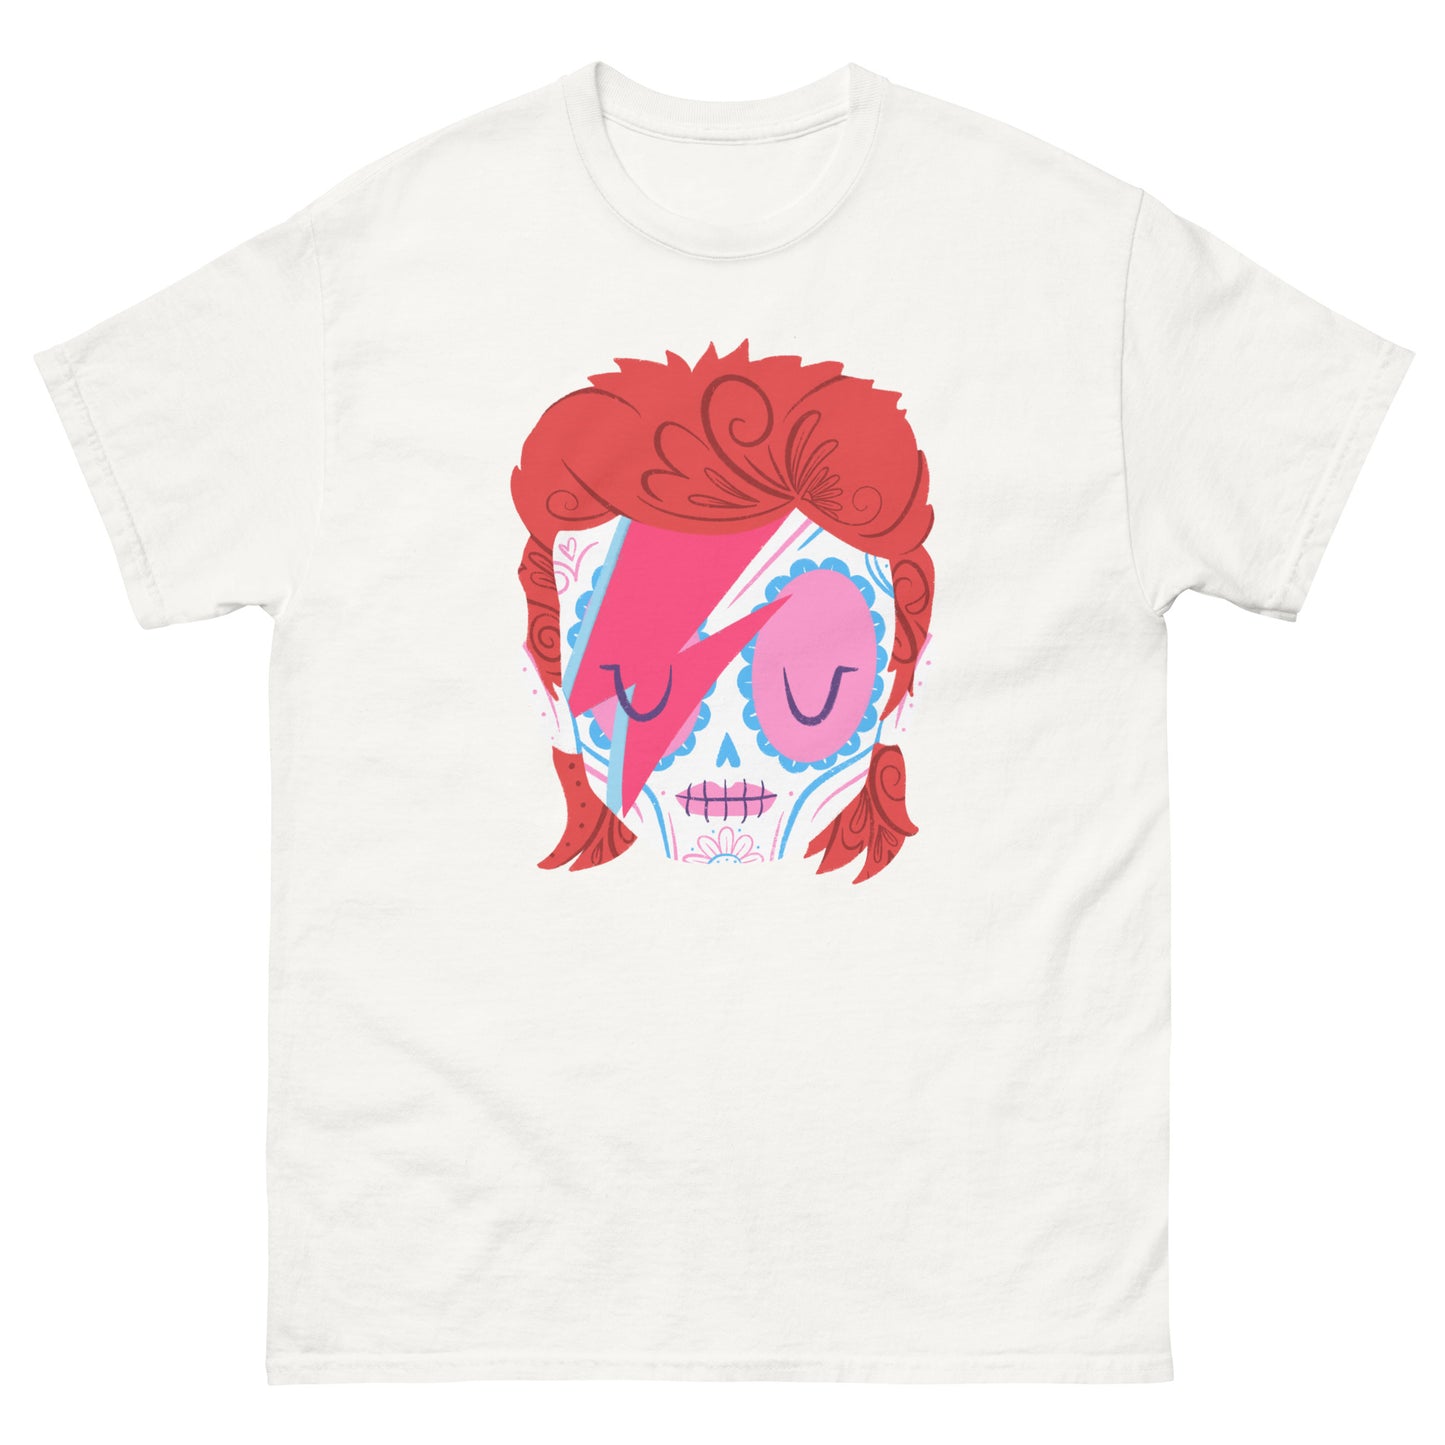 David Bowie - PopMuertos Sugar Skull T-Shirt